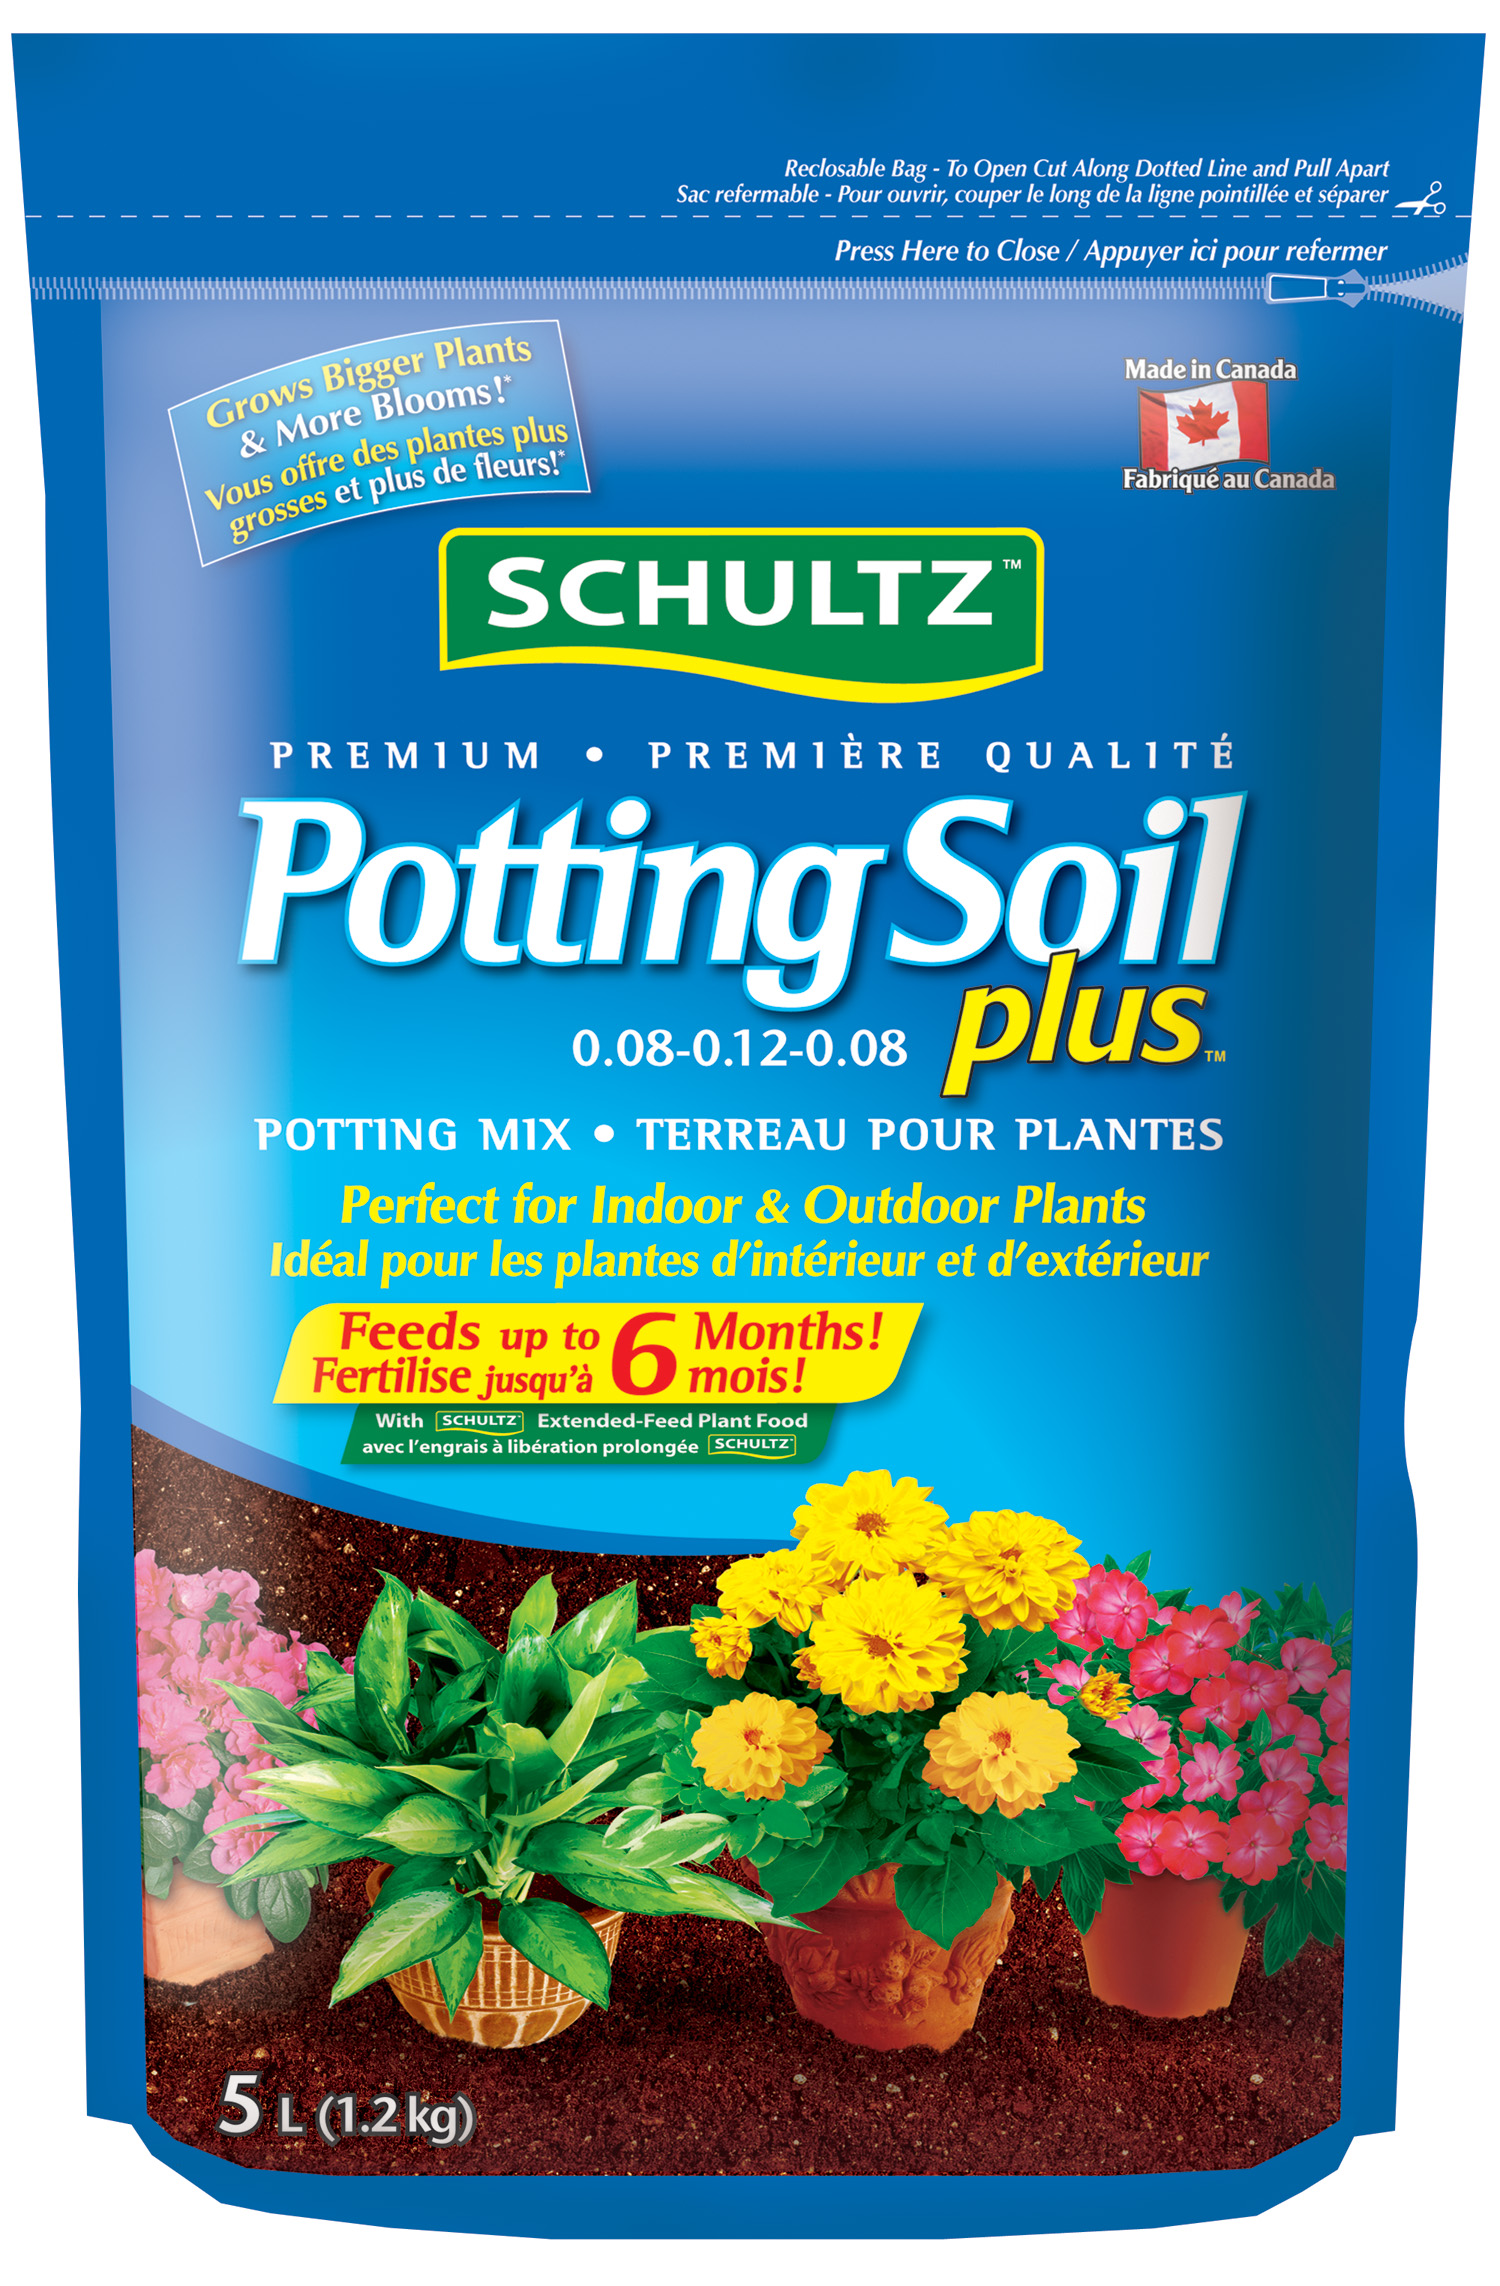 Professional Potting Soil Plus™ | Premier Tech Home and Garden